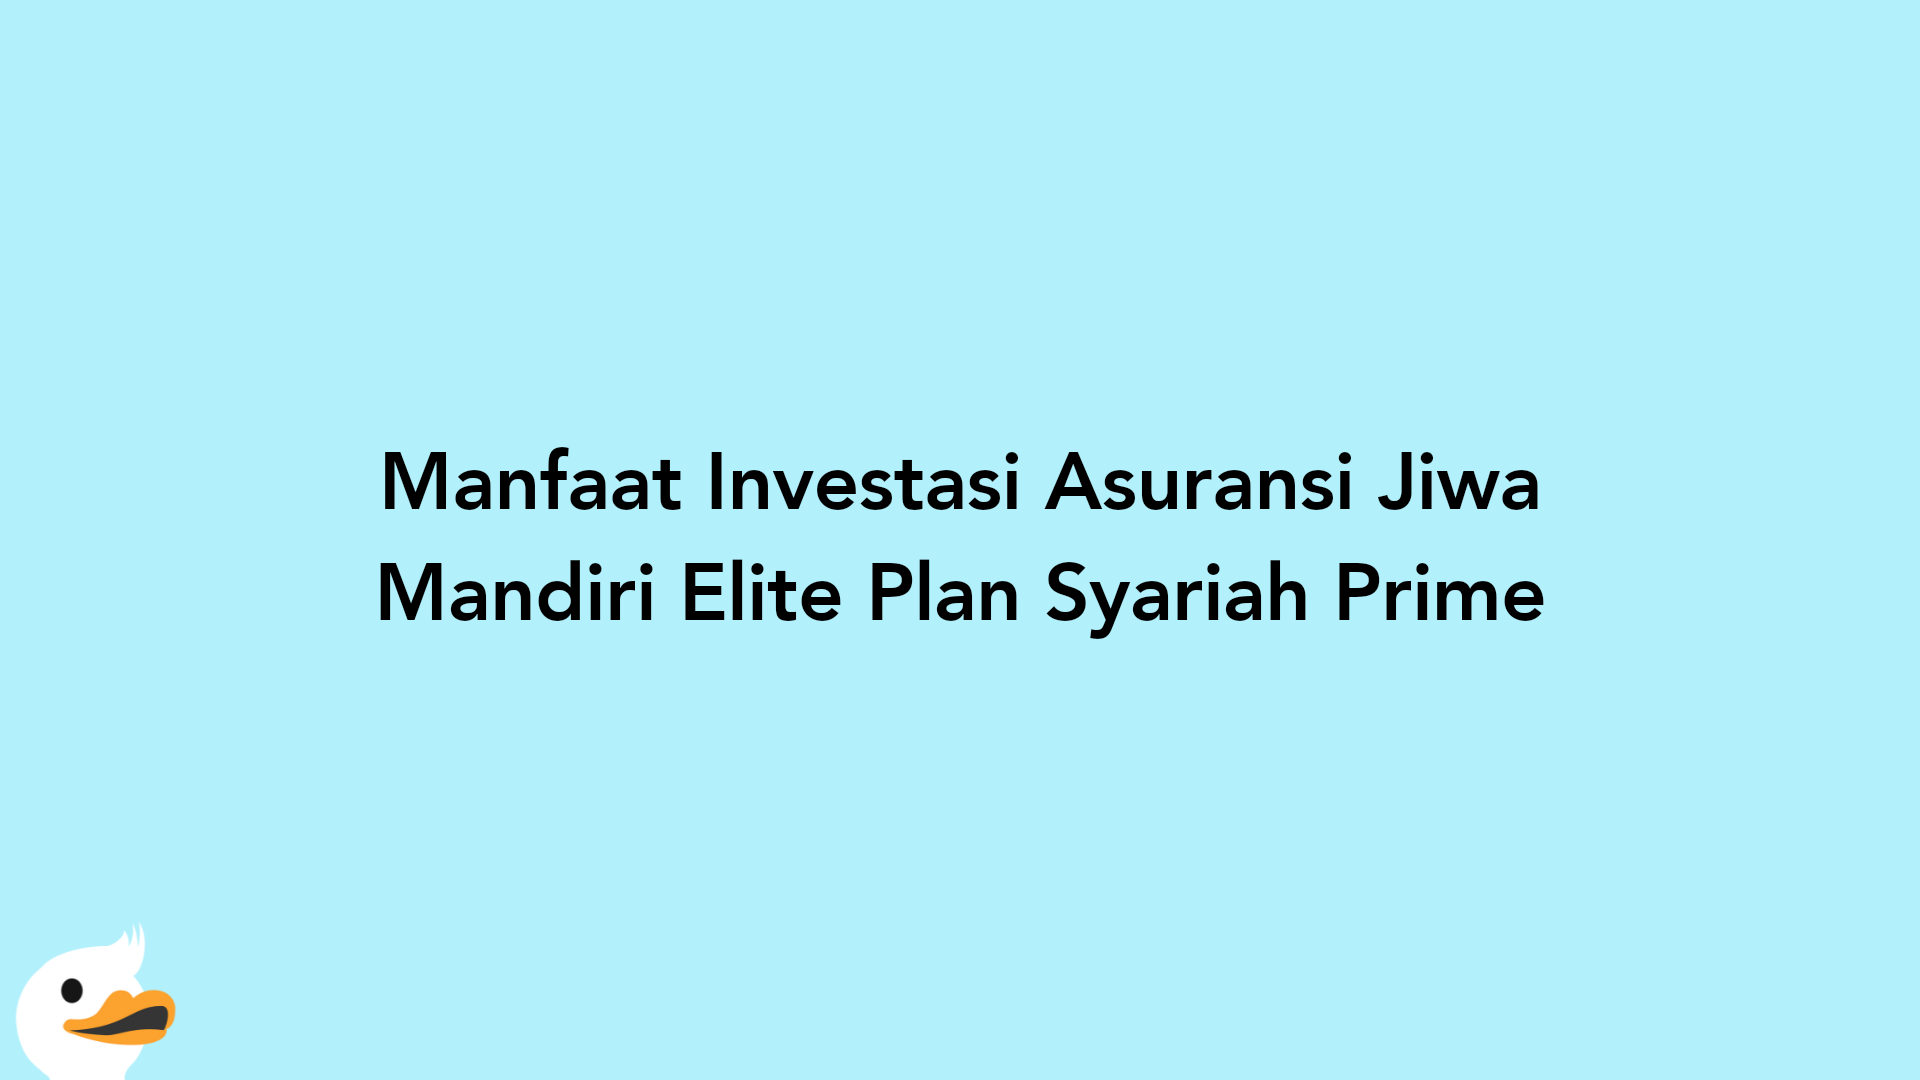 Manfaat Investasi Asuransi Jiwa Mandiri Elite Plan Syariah Prime